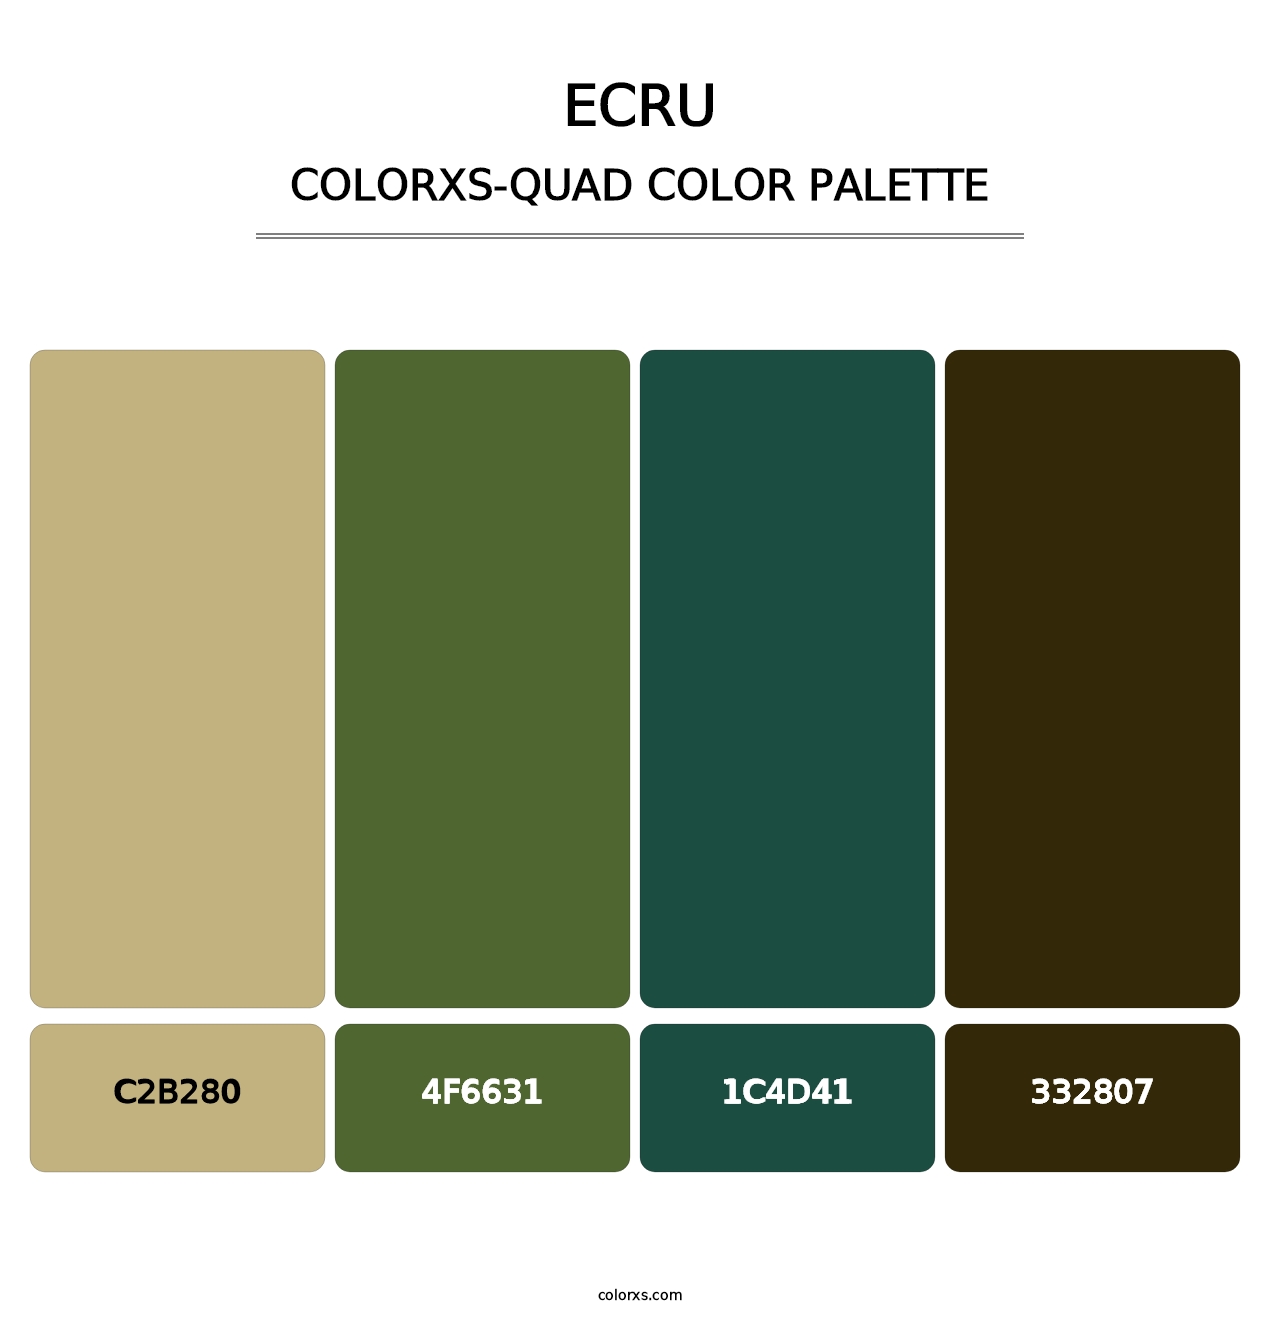 Ecru - Colorxs Quad Palette